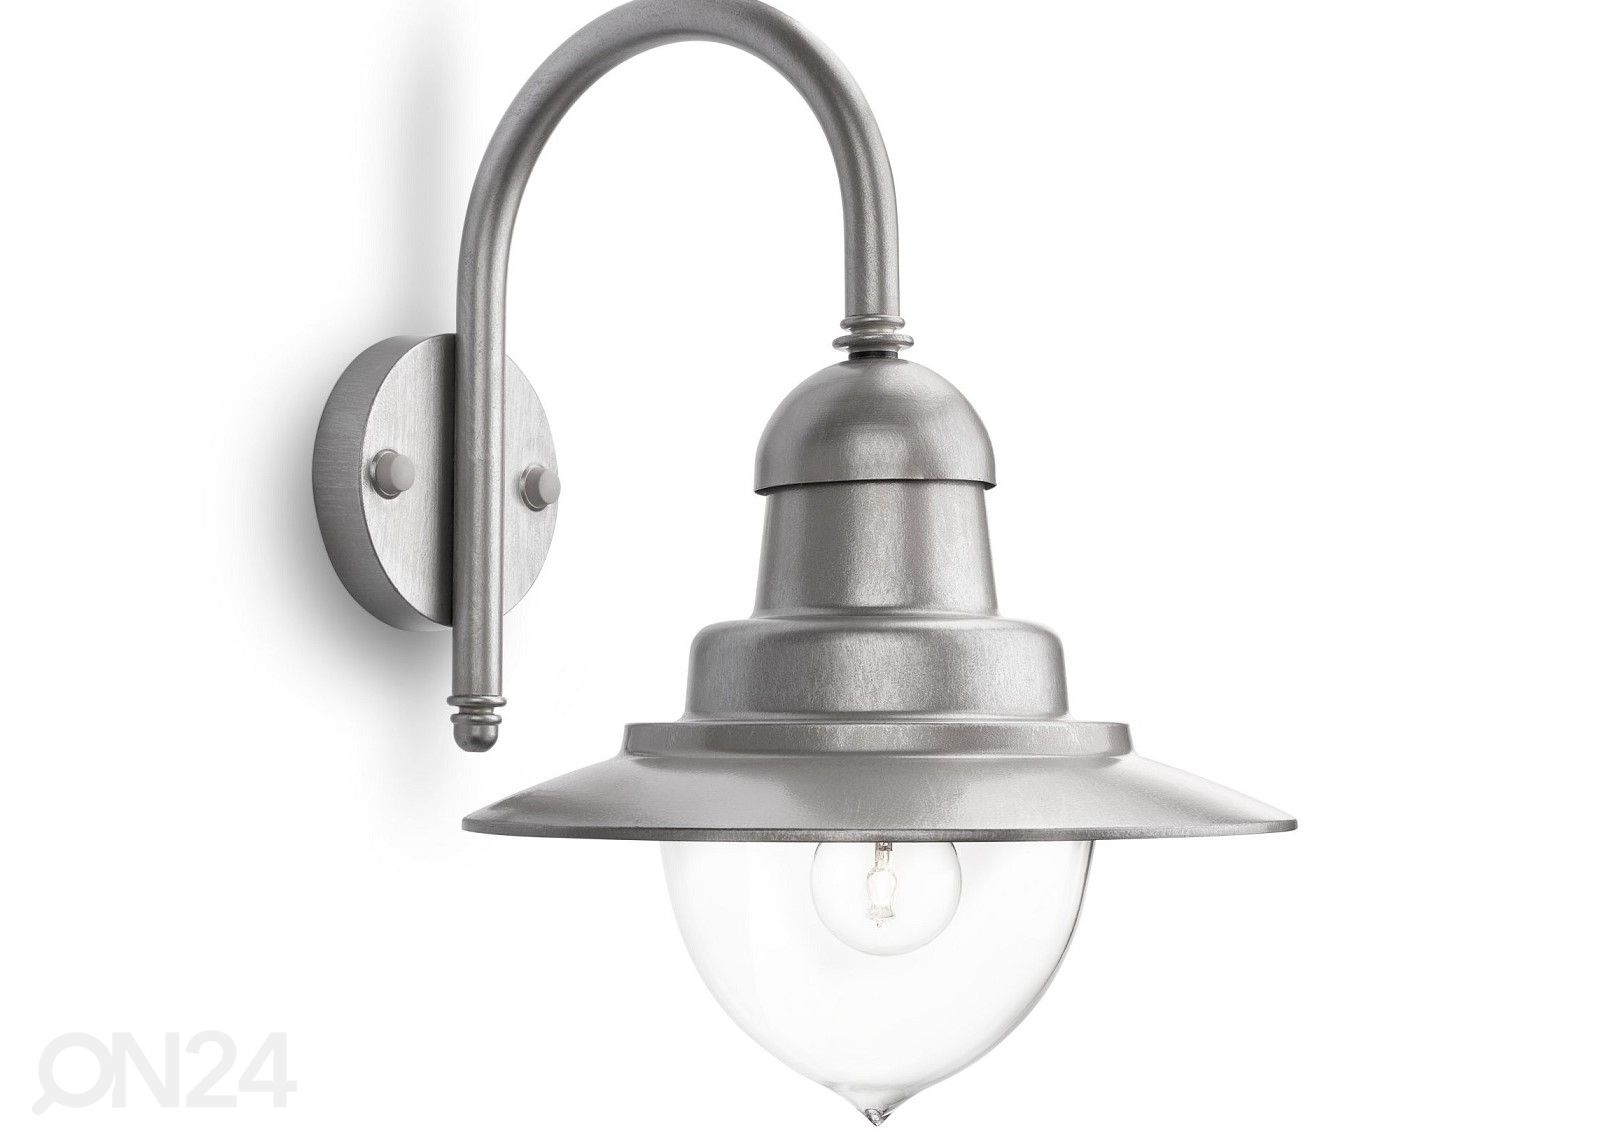 Настенный светильник Philips Raindrop 1xE27 серебряный увеличить